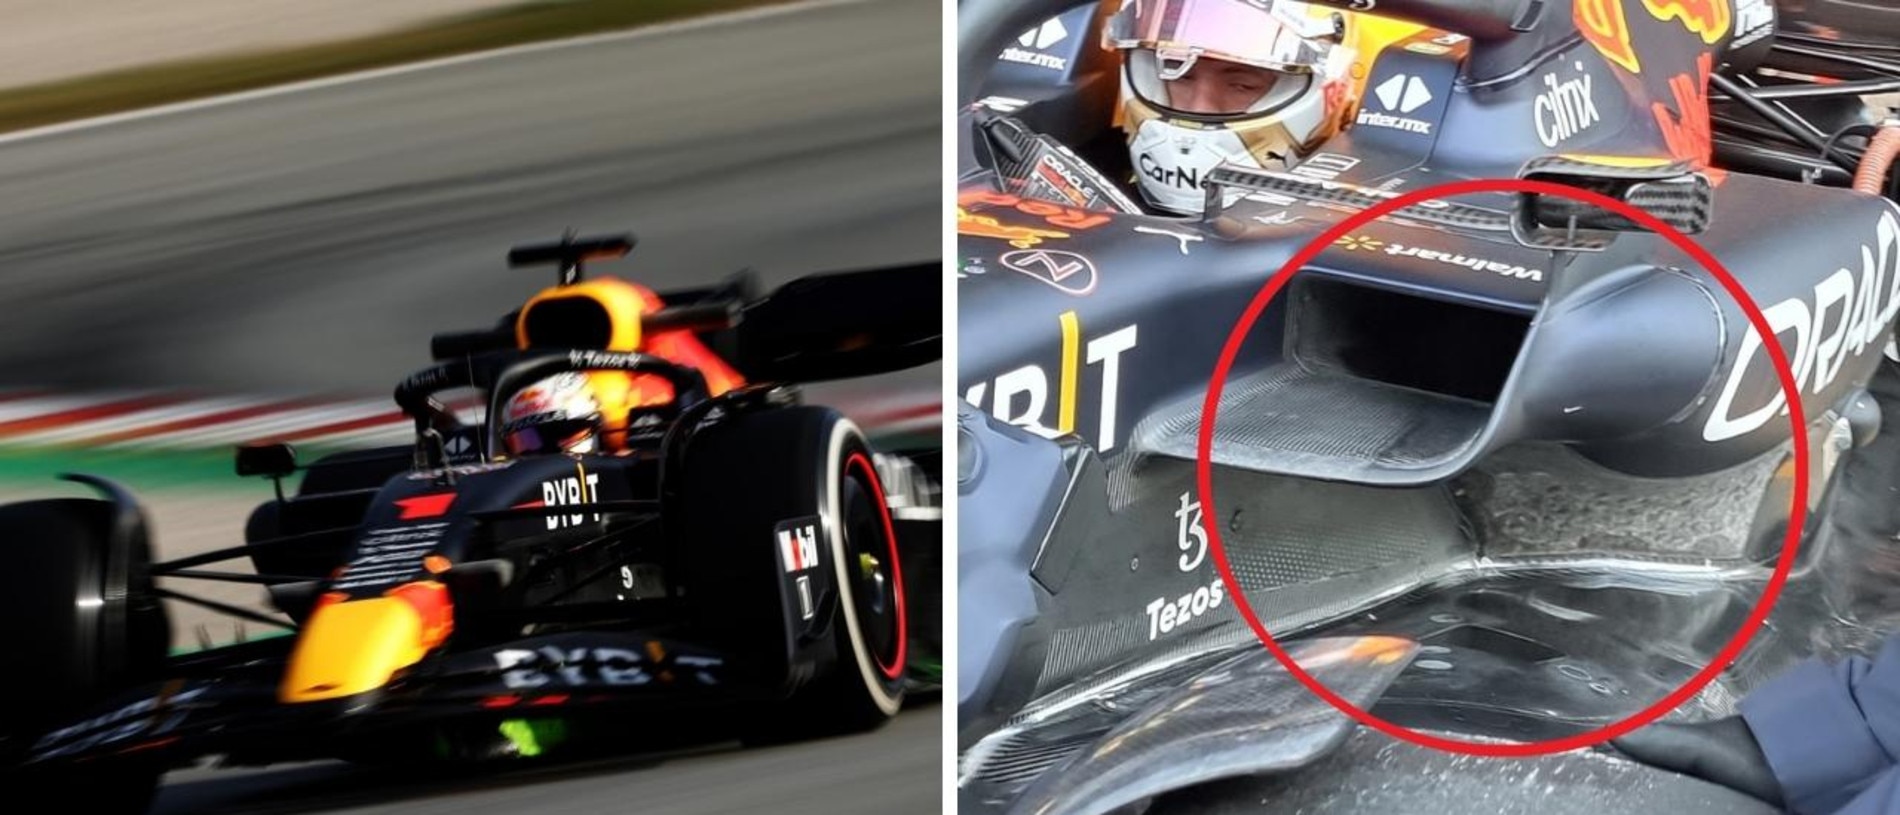 F1 22 Testing Red Bull Side Pod Revealed Max Verstappen Car News